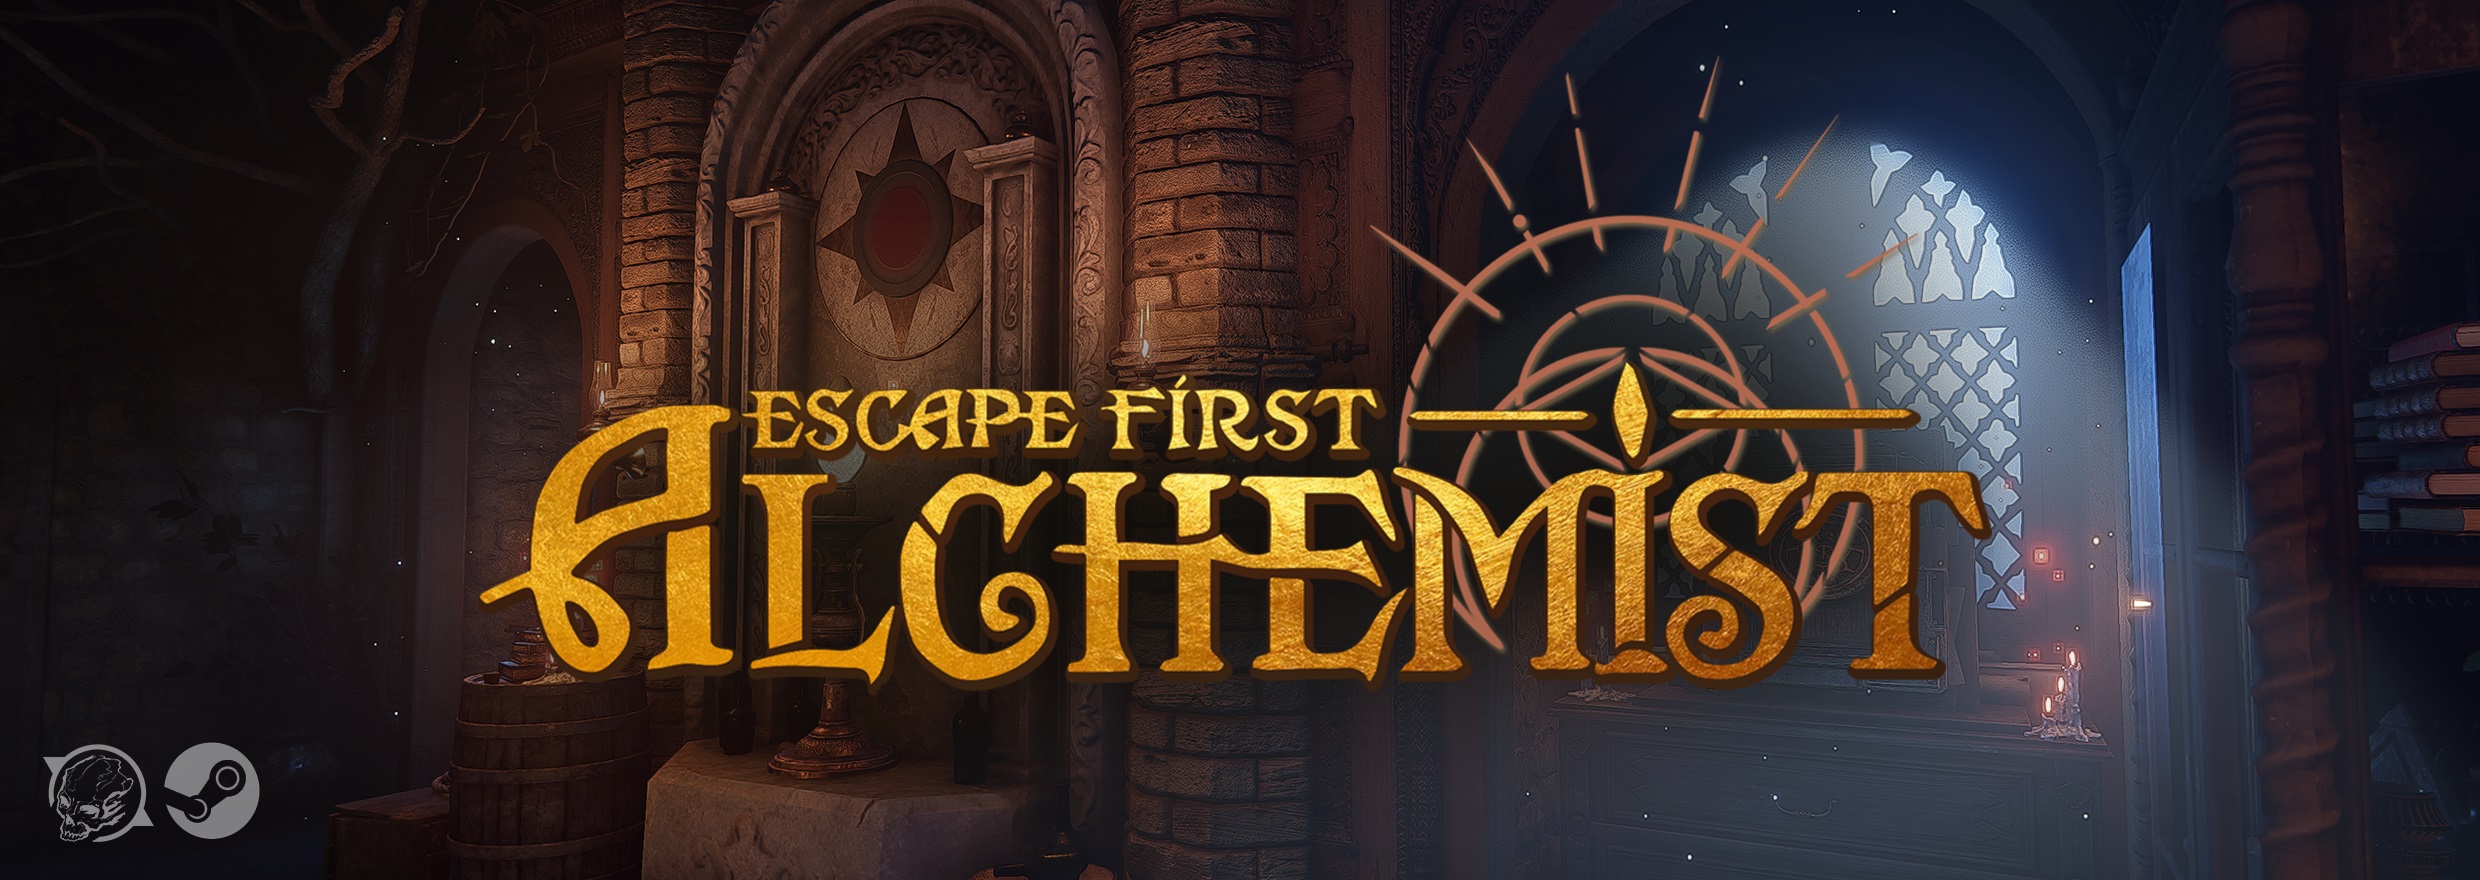 Escape First Alchemist Prologue